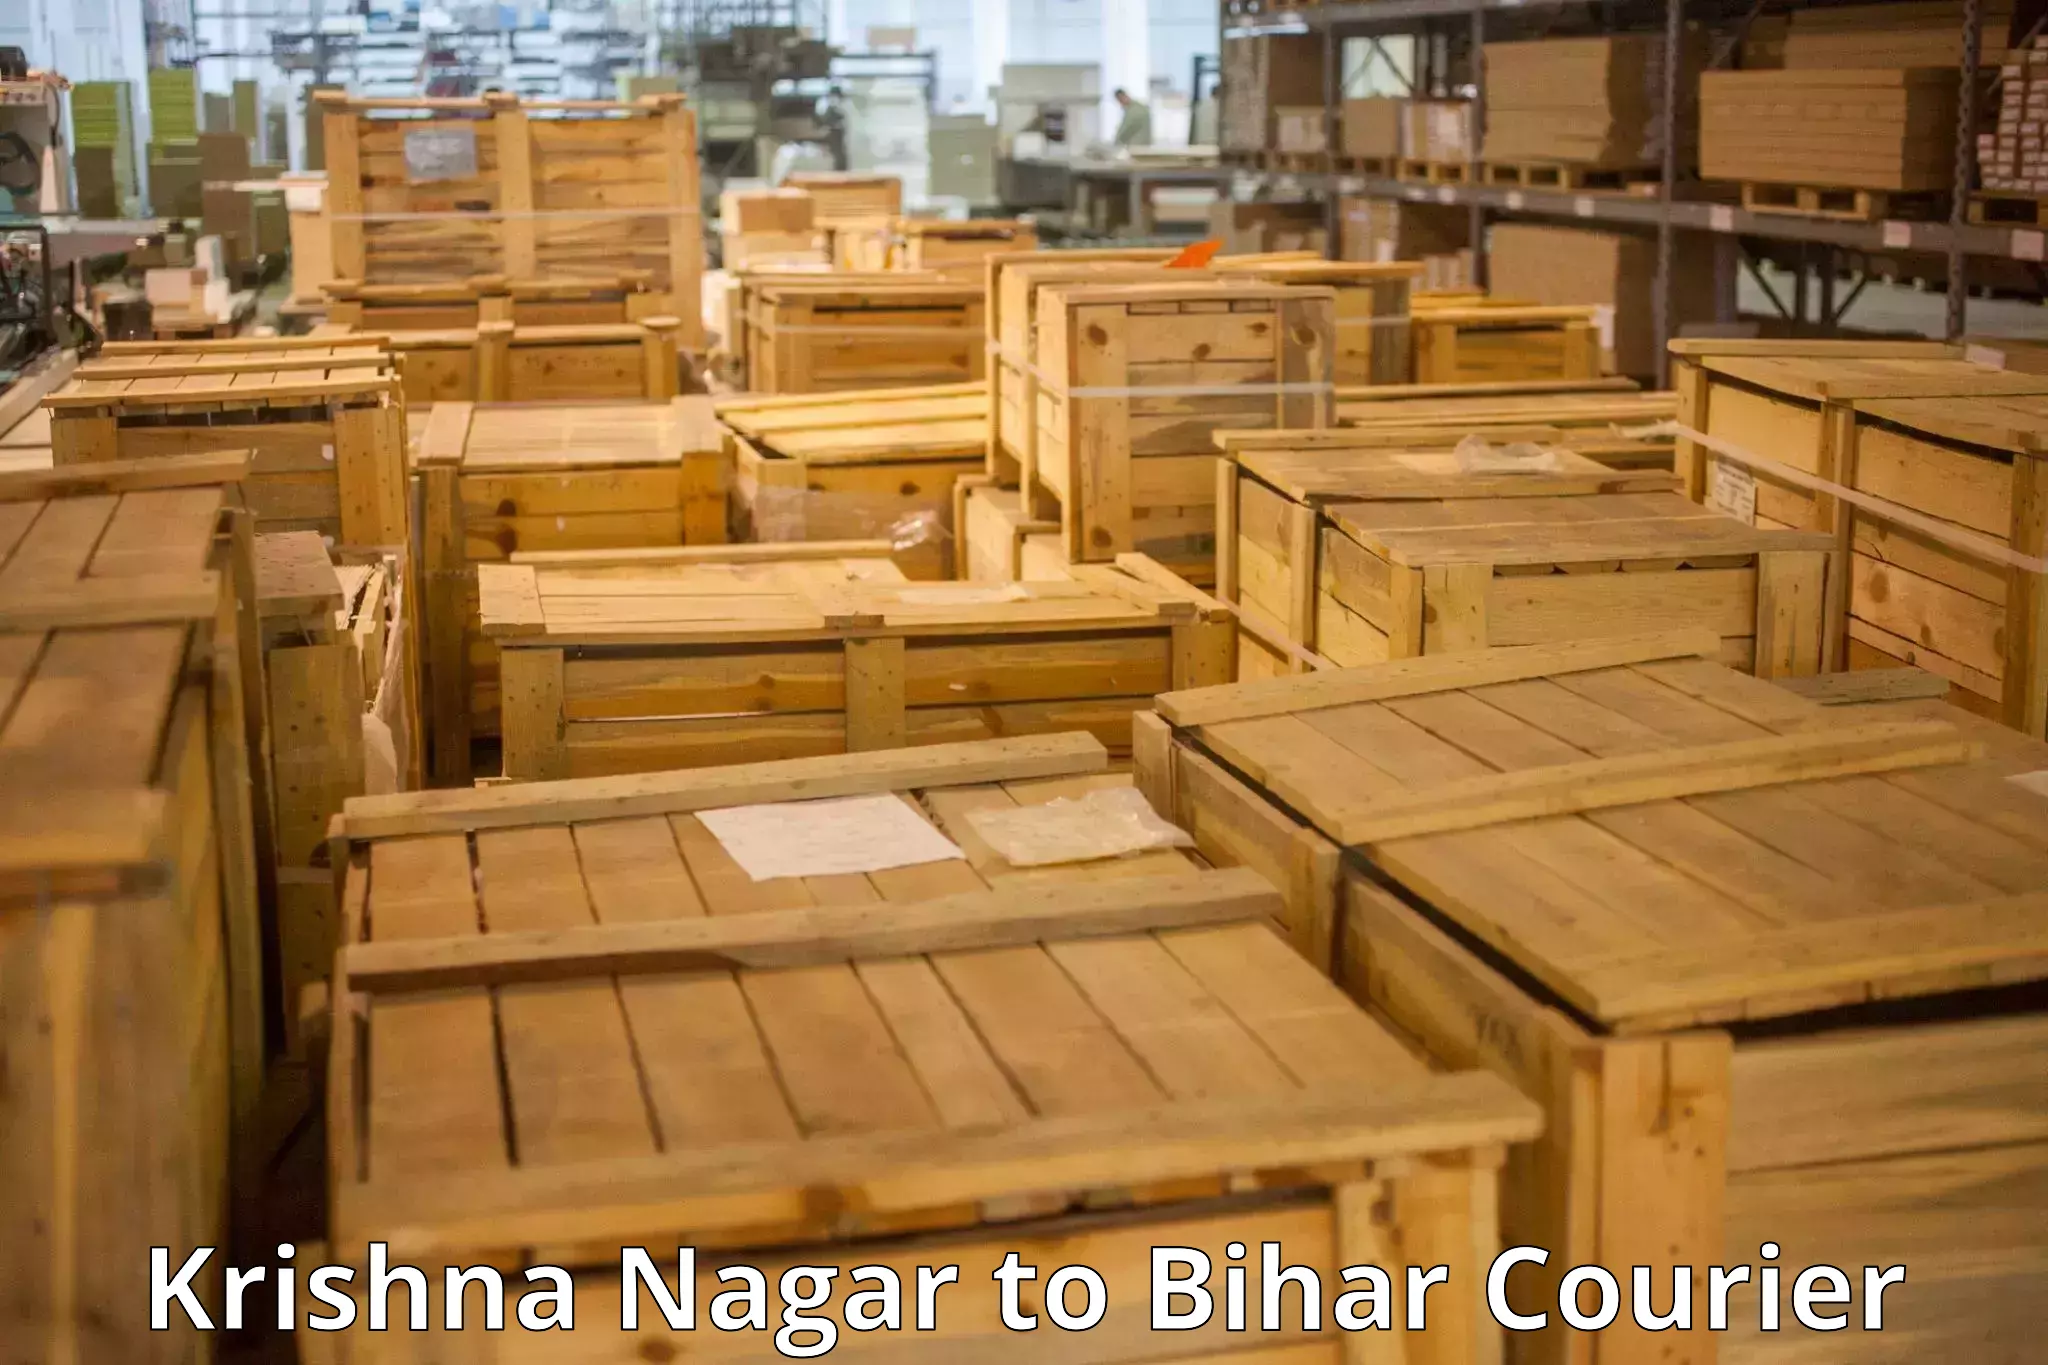 Luggage shipment specialists Krishna Nagar to Daudnagar